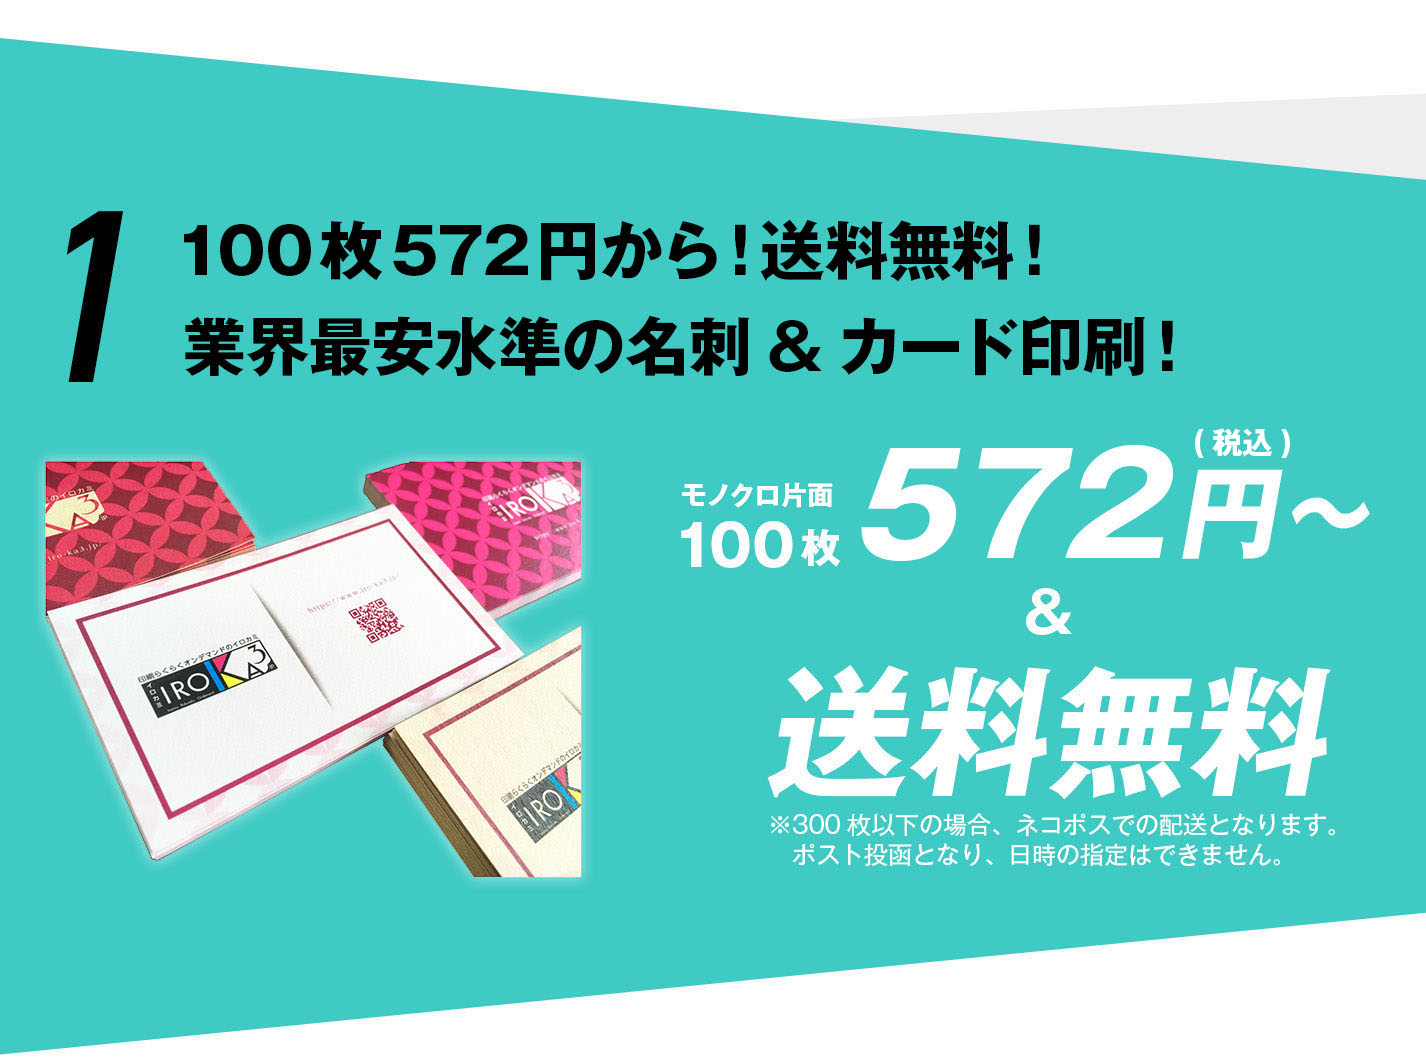 100枚572円から！送料無料！業界最安水準の名刺&カード印刷！